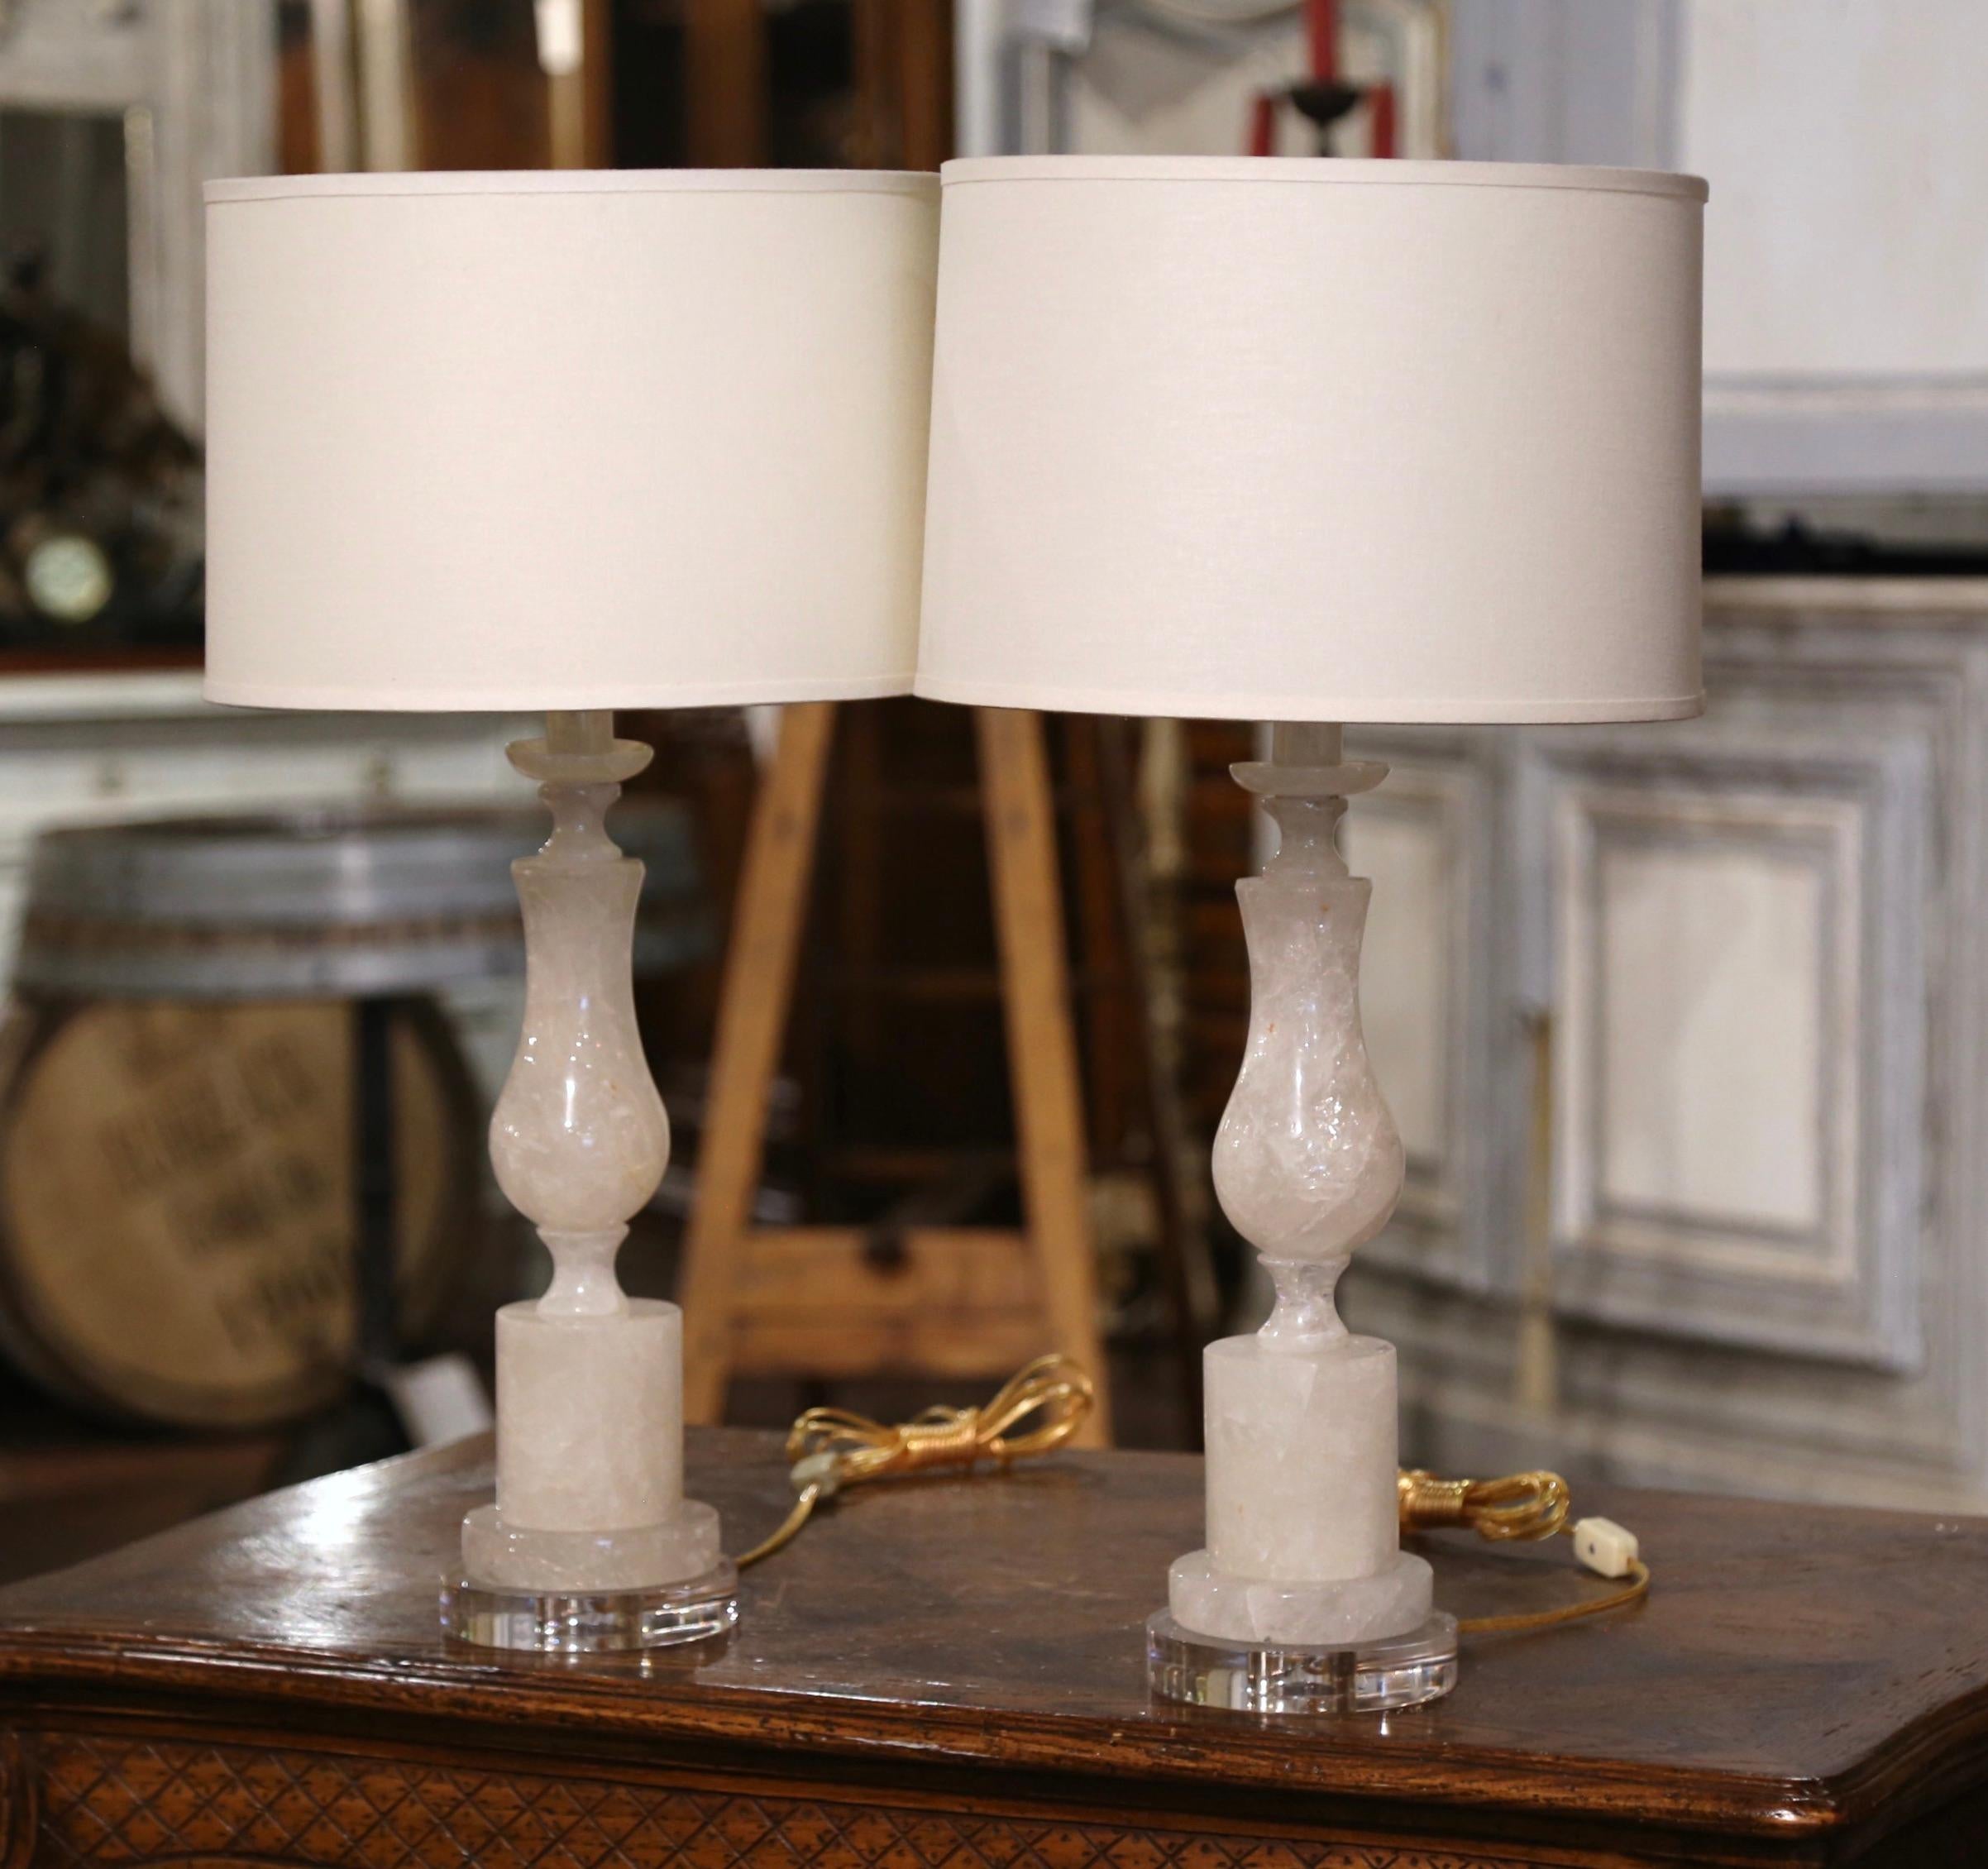 Bringen Sie Eleganz in Ihr formelles Wohnzimmer oder DEN mit diesem raffinierten Paar Bergkristall-Tischlampen. Die in Brasilien gefertigten, handgeschnitzten Lampen mit gedrechselten Stielen stehen auf klaren, runden Acrylsockeln und wurden mit